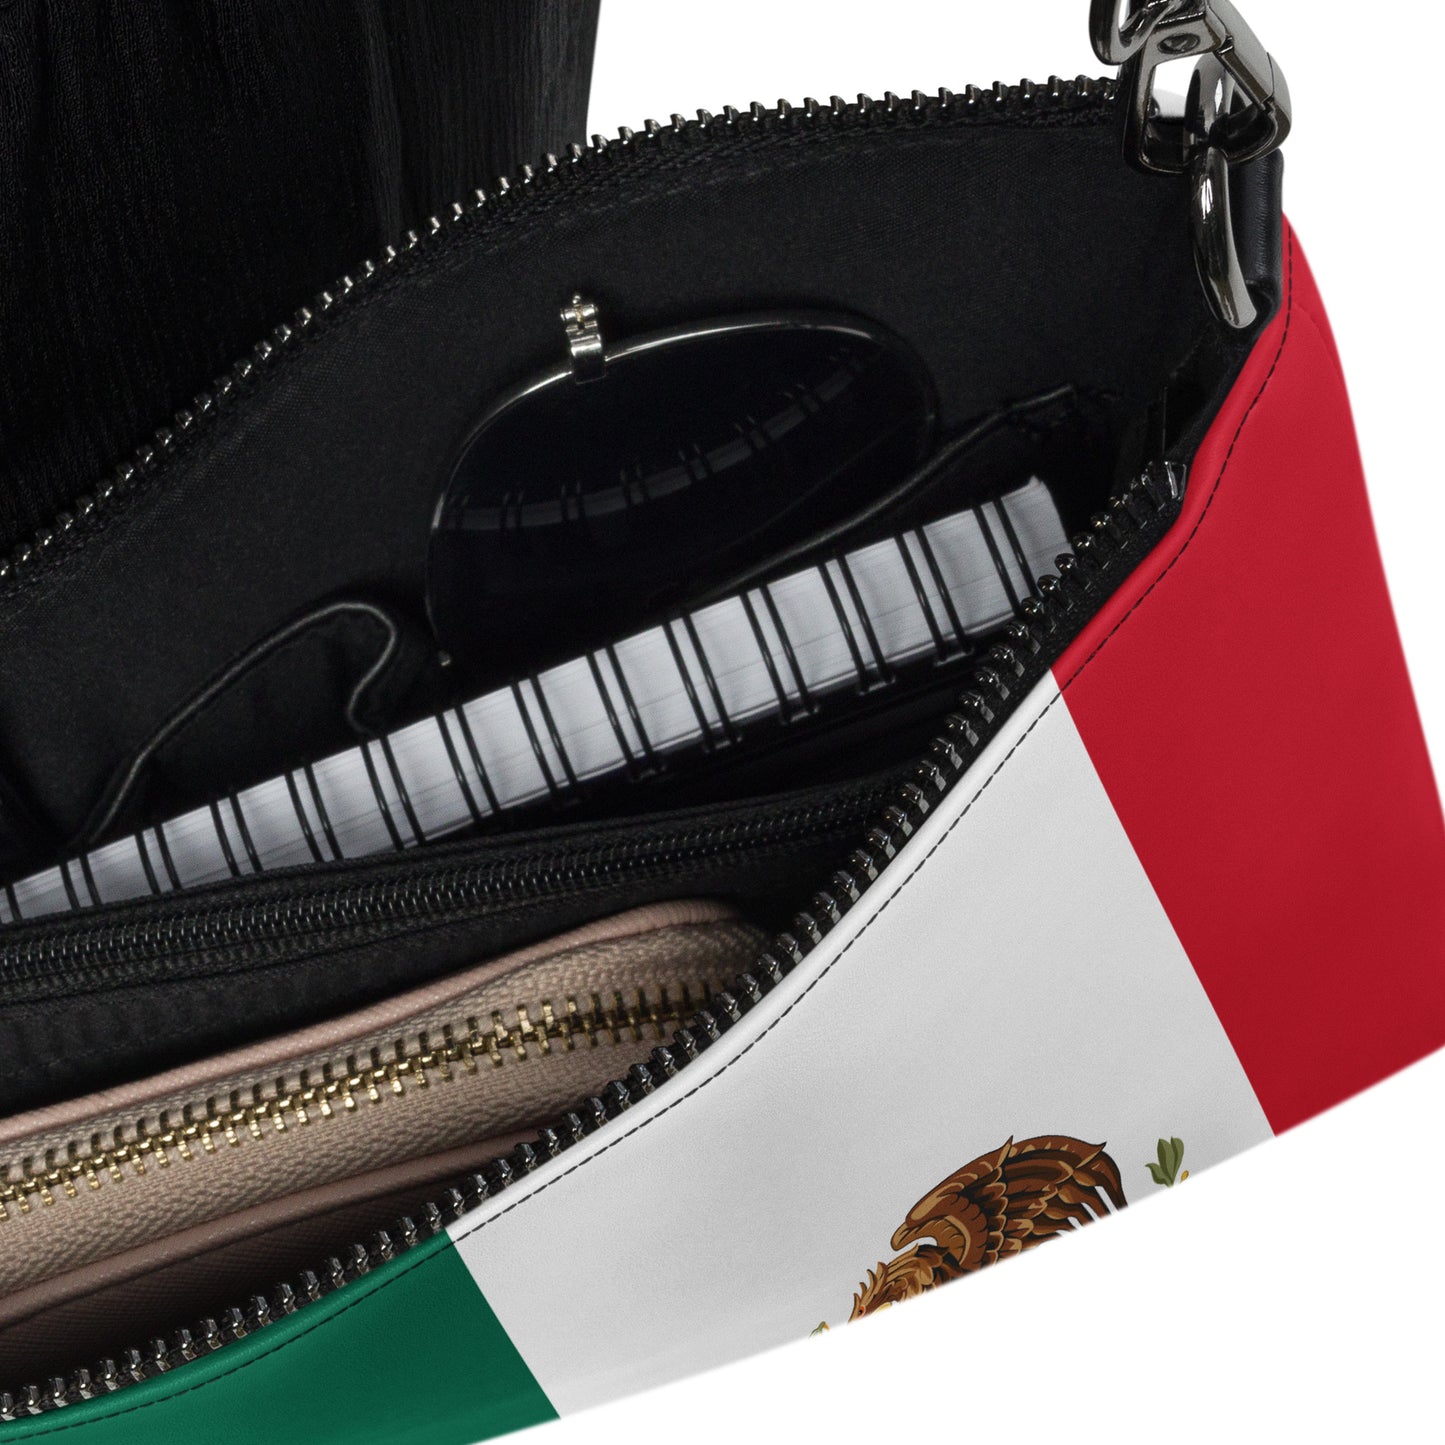 Mexican Flag Handbag